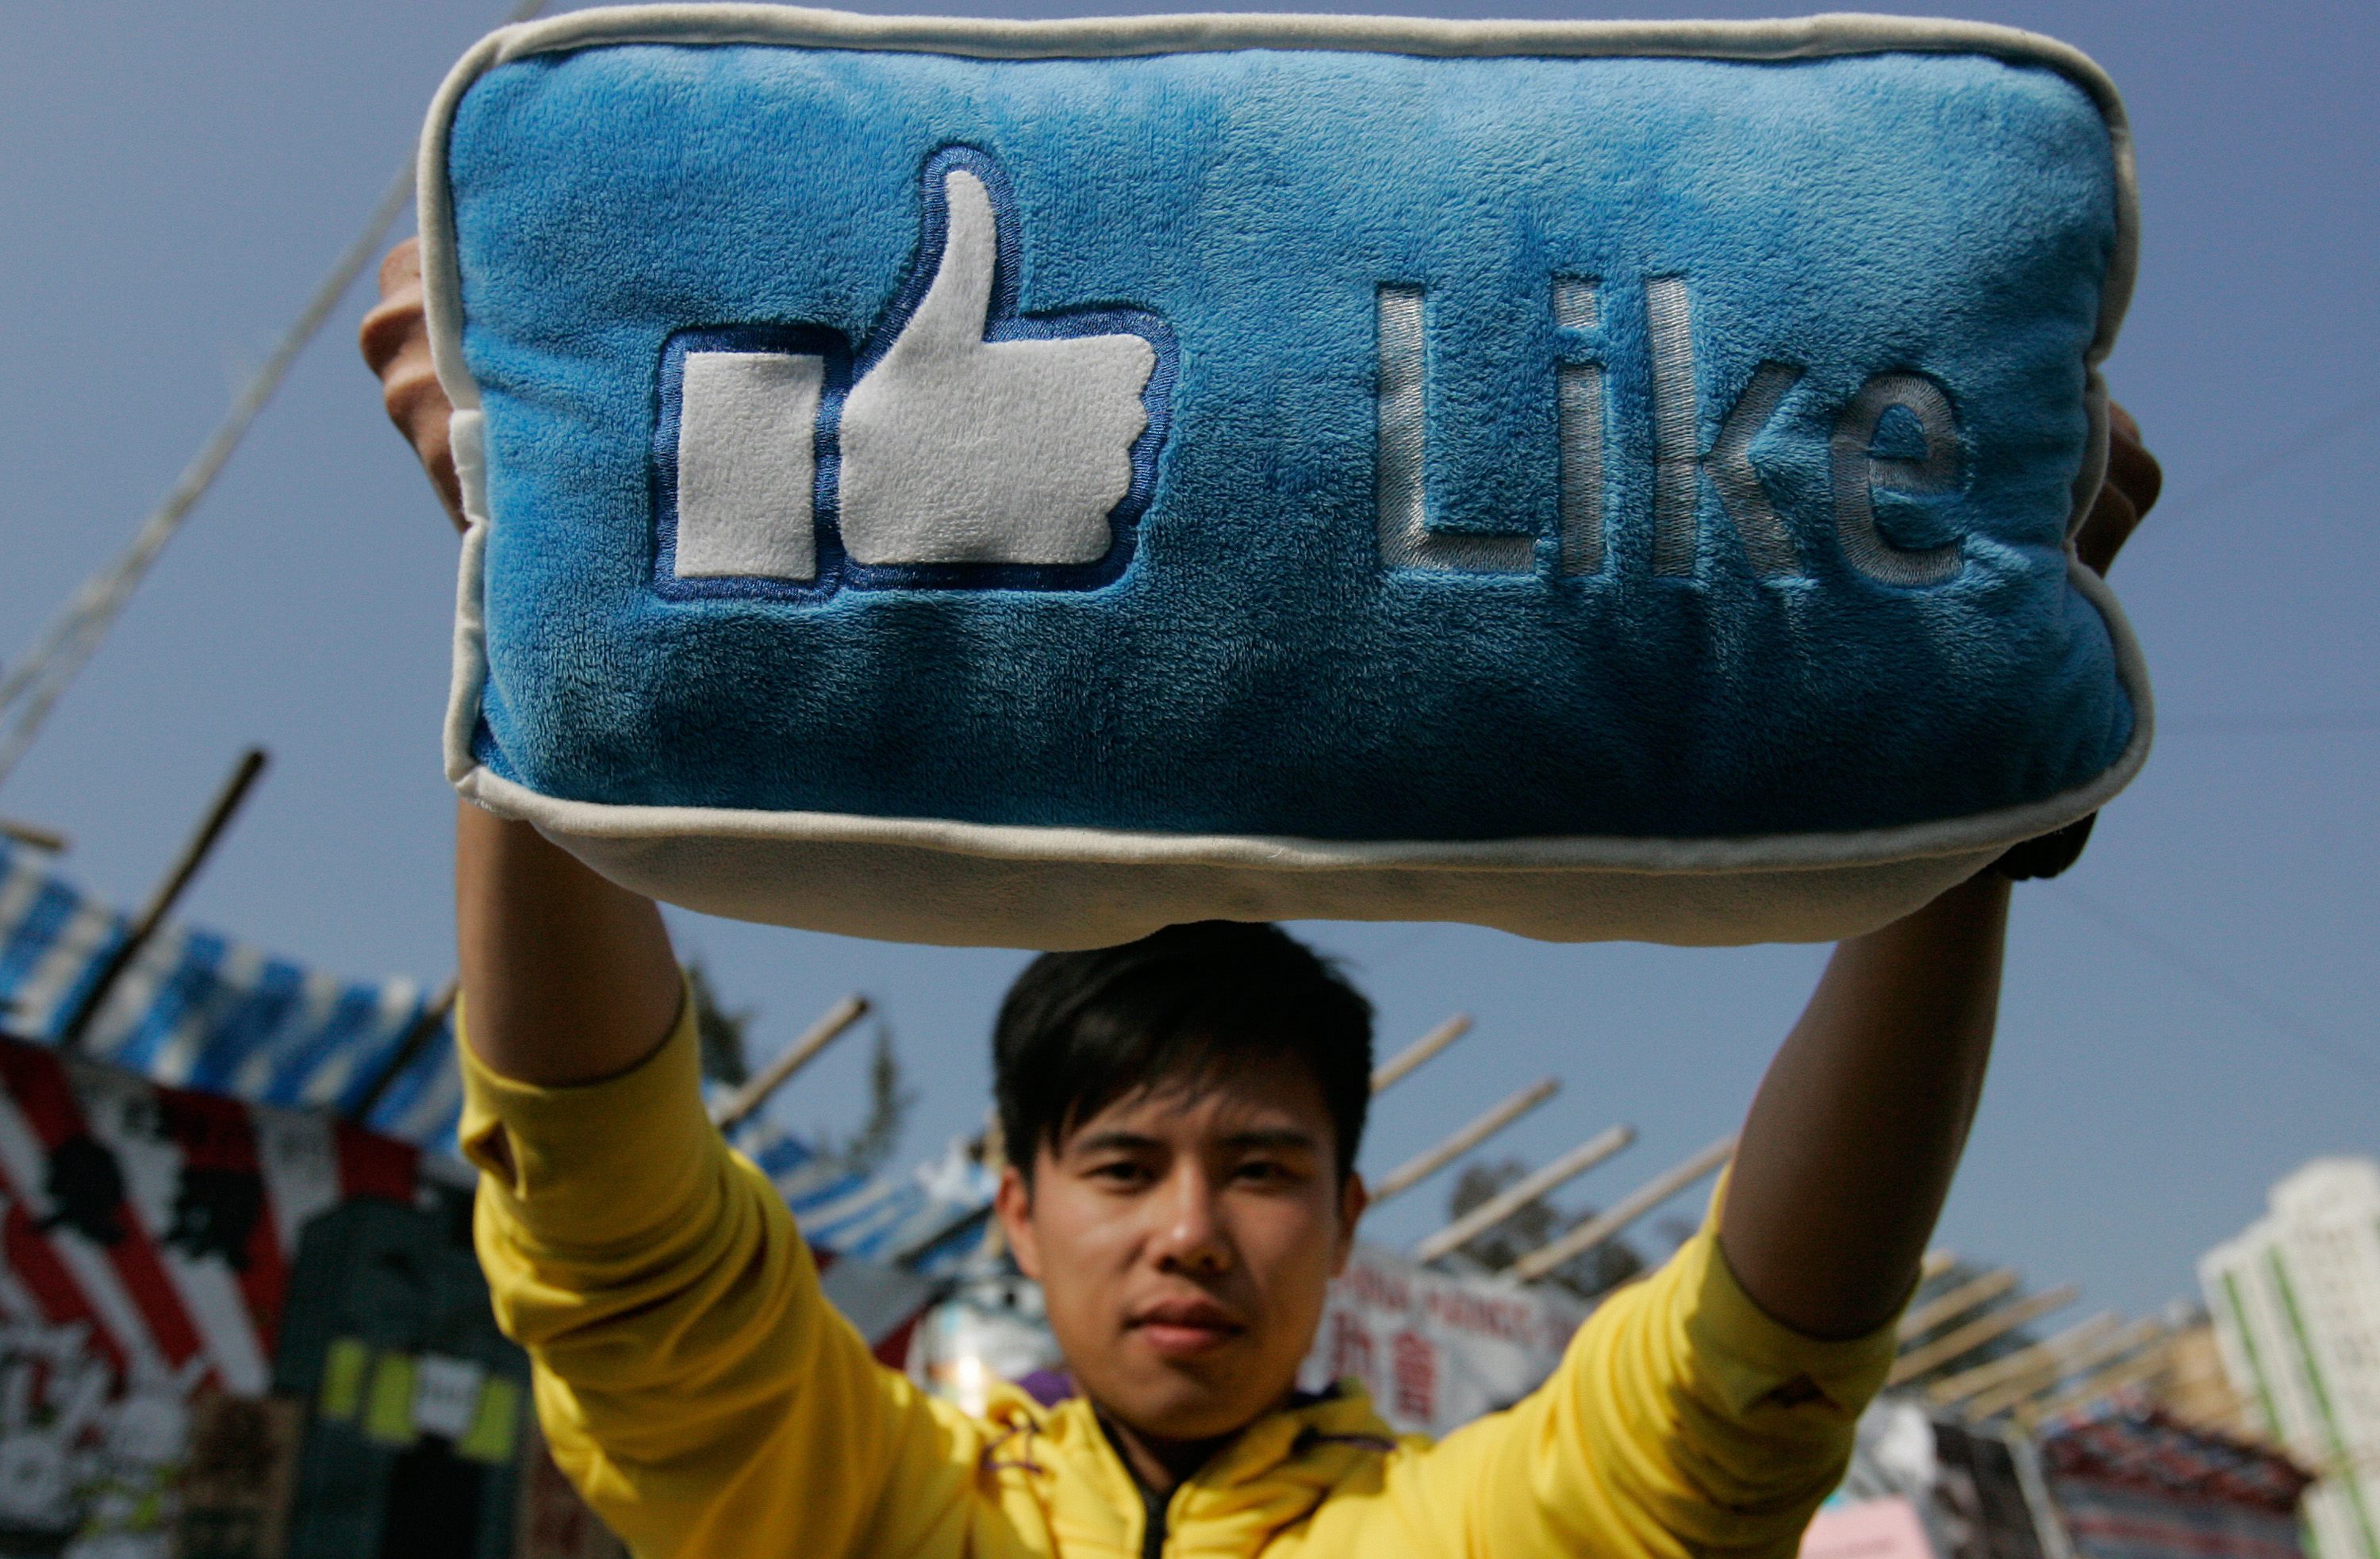 Скъпоценните данни за това какво харесват хората са в ”складовете” на Facebook